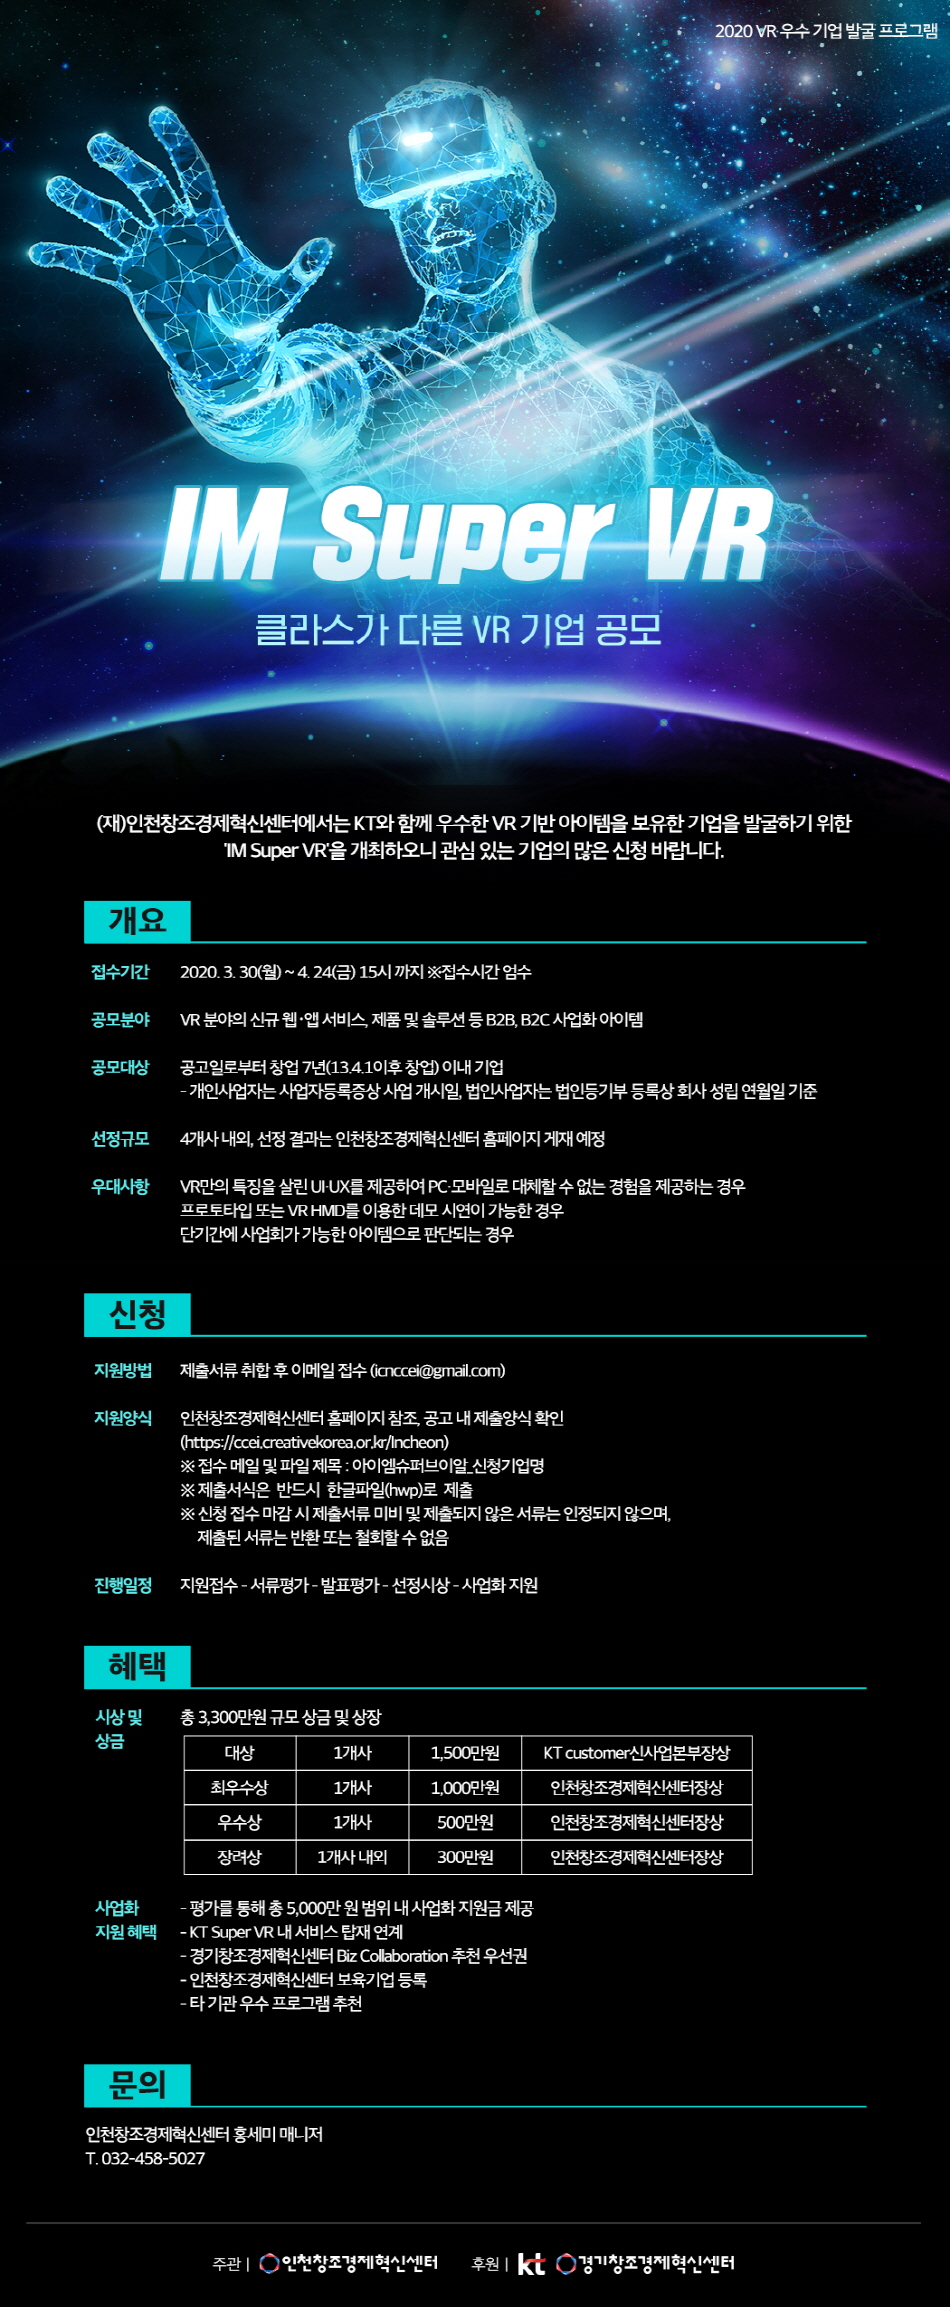 인천창조경제혁신센터 「IM Super VR」참가기업 모집